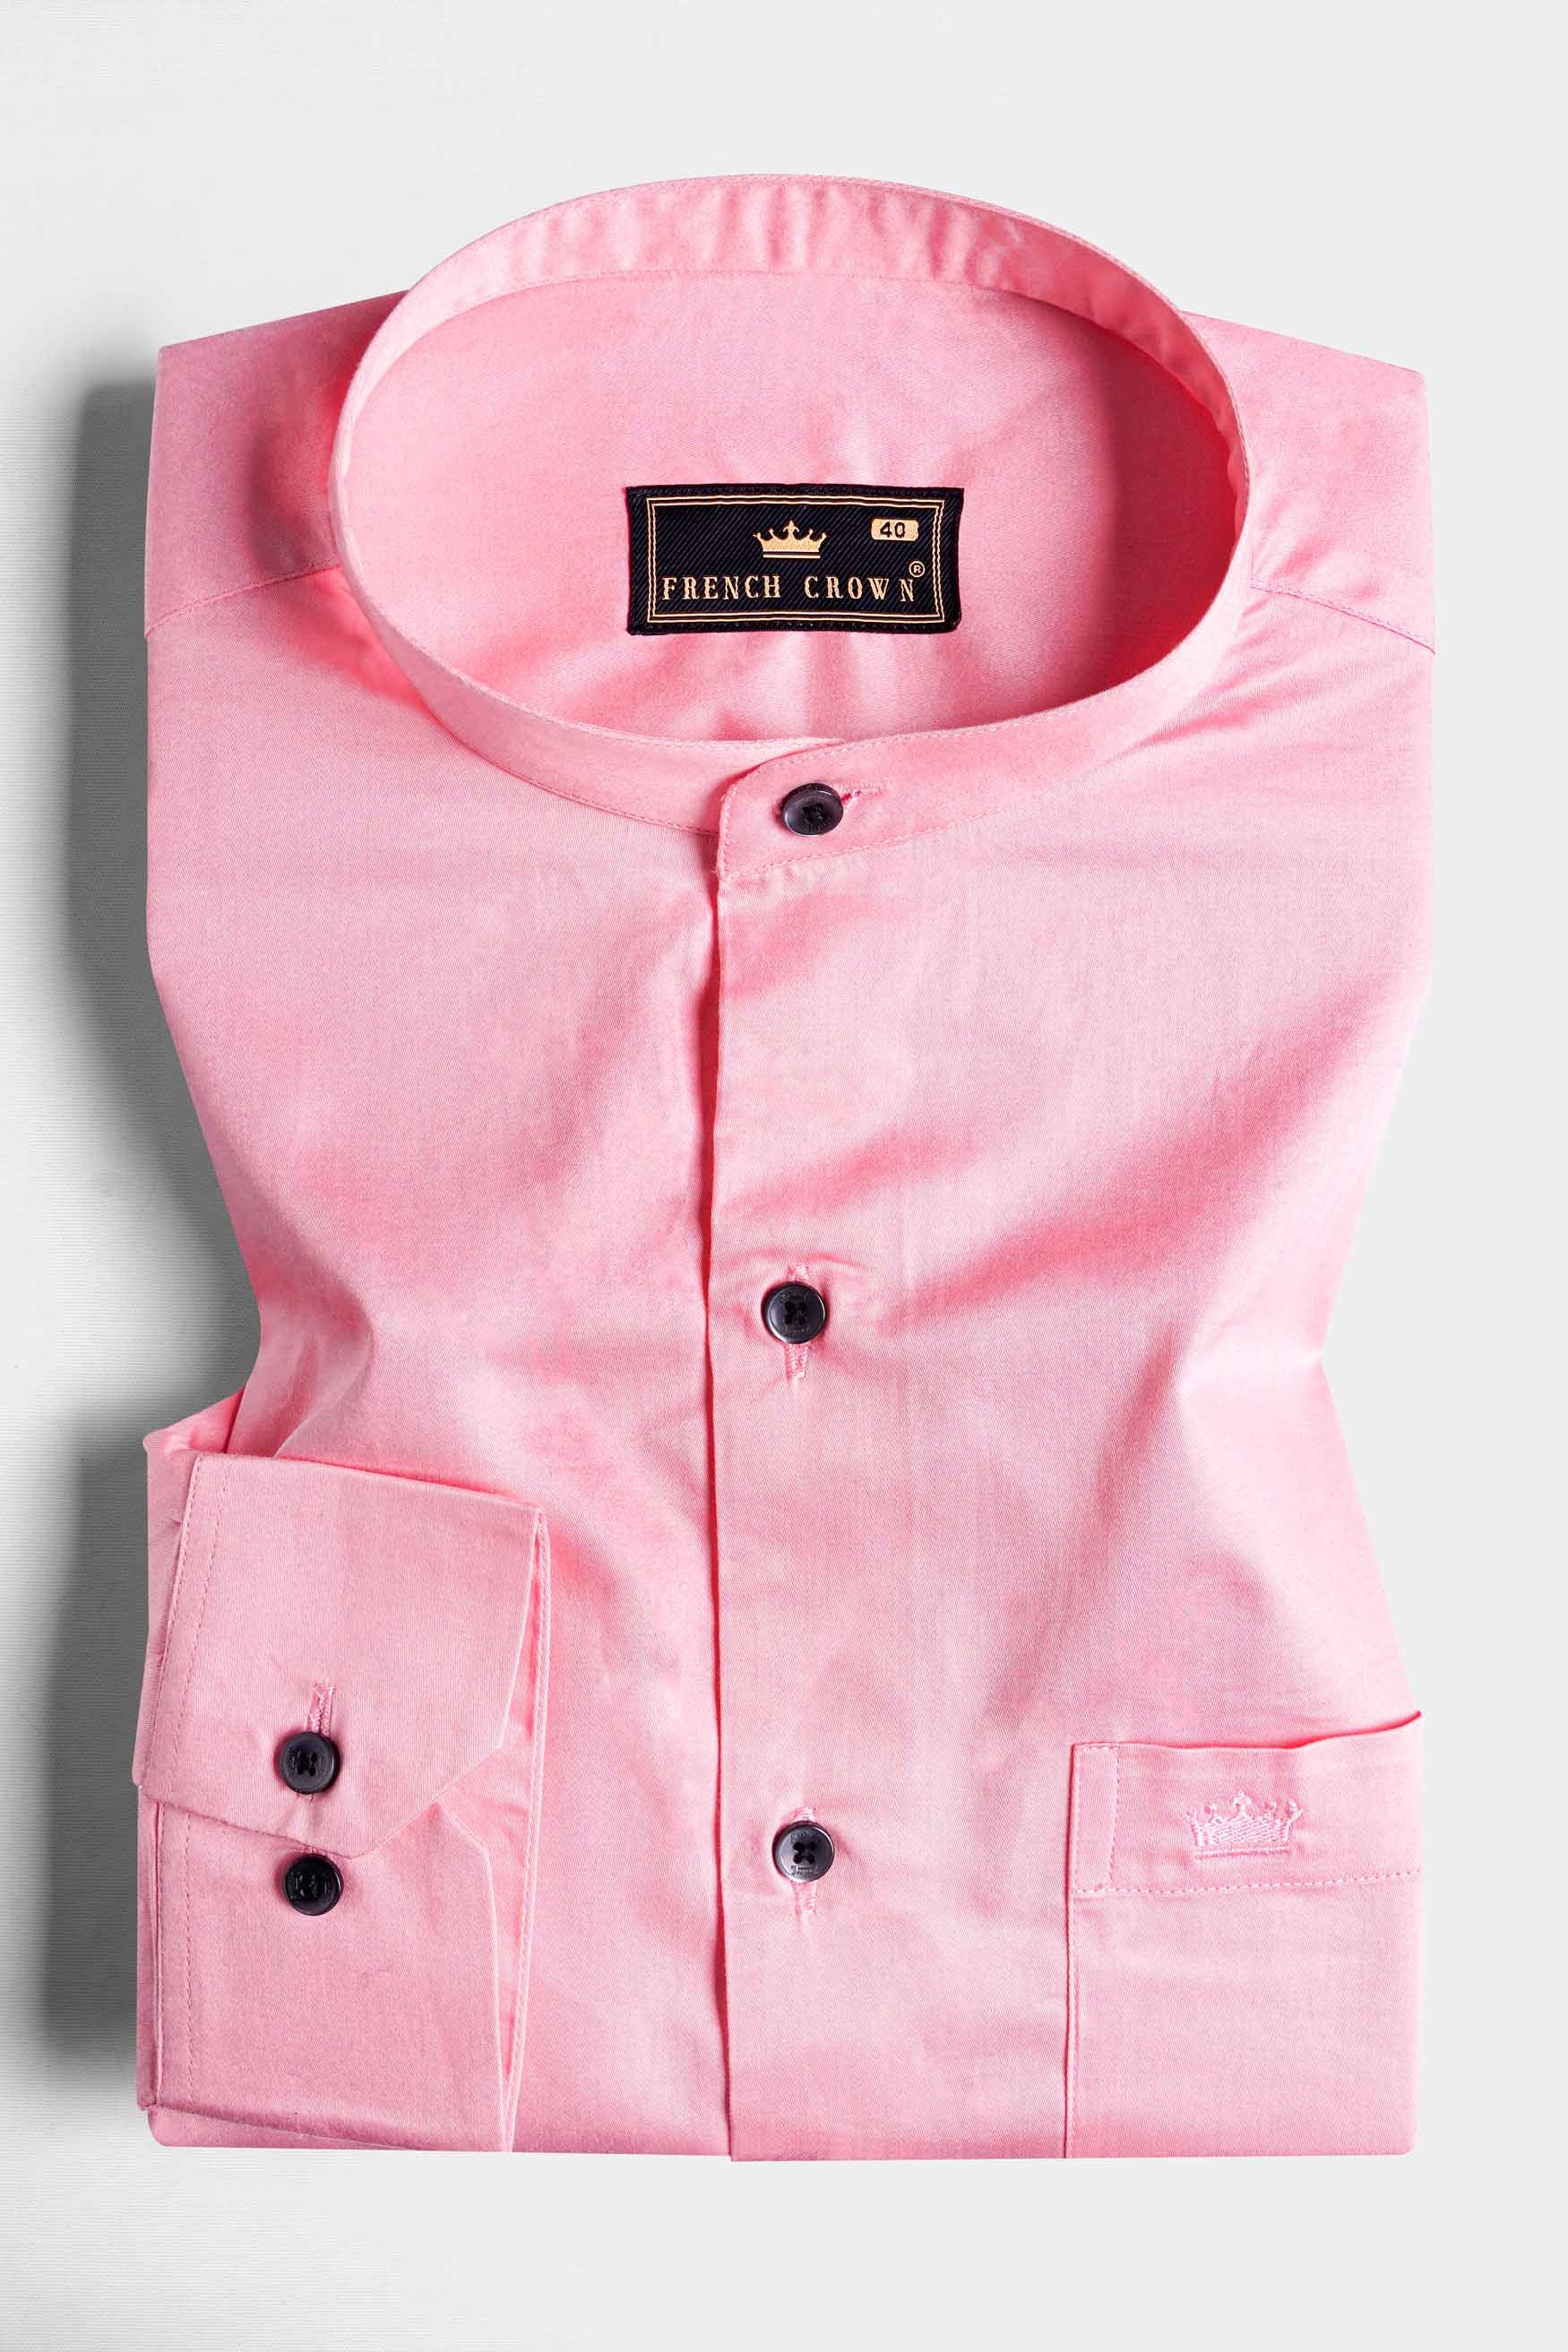 Taffy Pink Subtle Sheen Super Soft Premium Cotton Mandarin Shirt